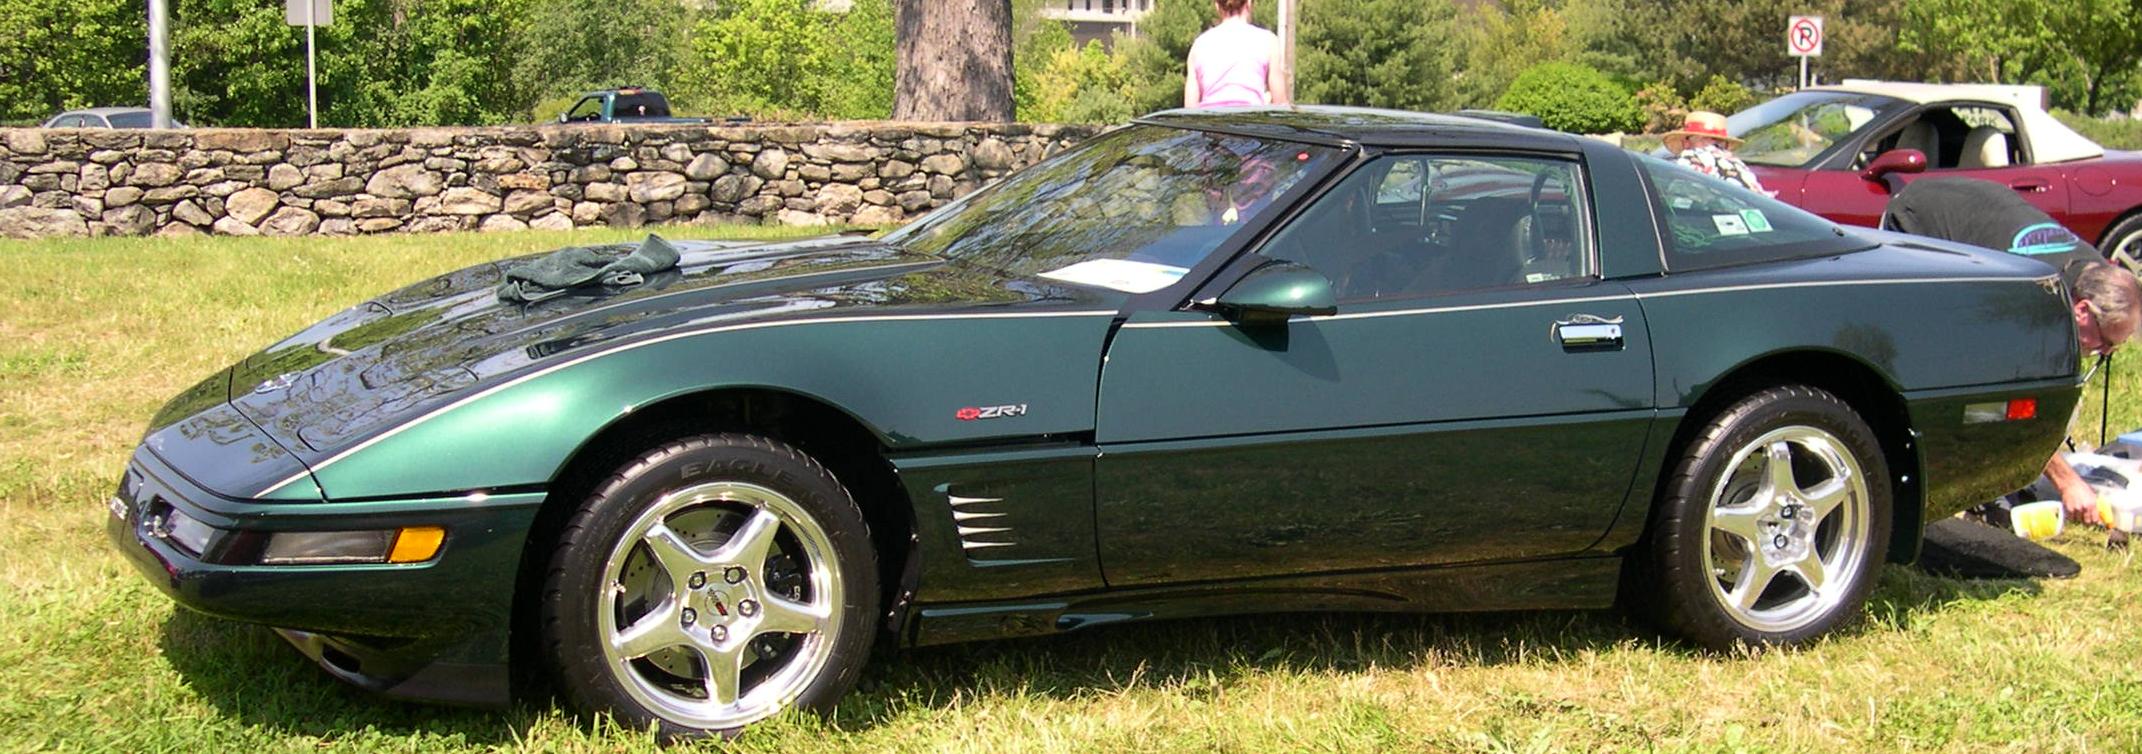 1993 Chevrolet Corvette ZR-1